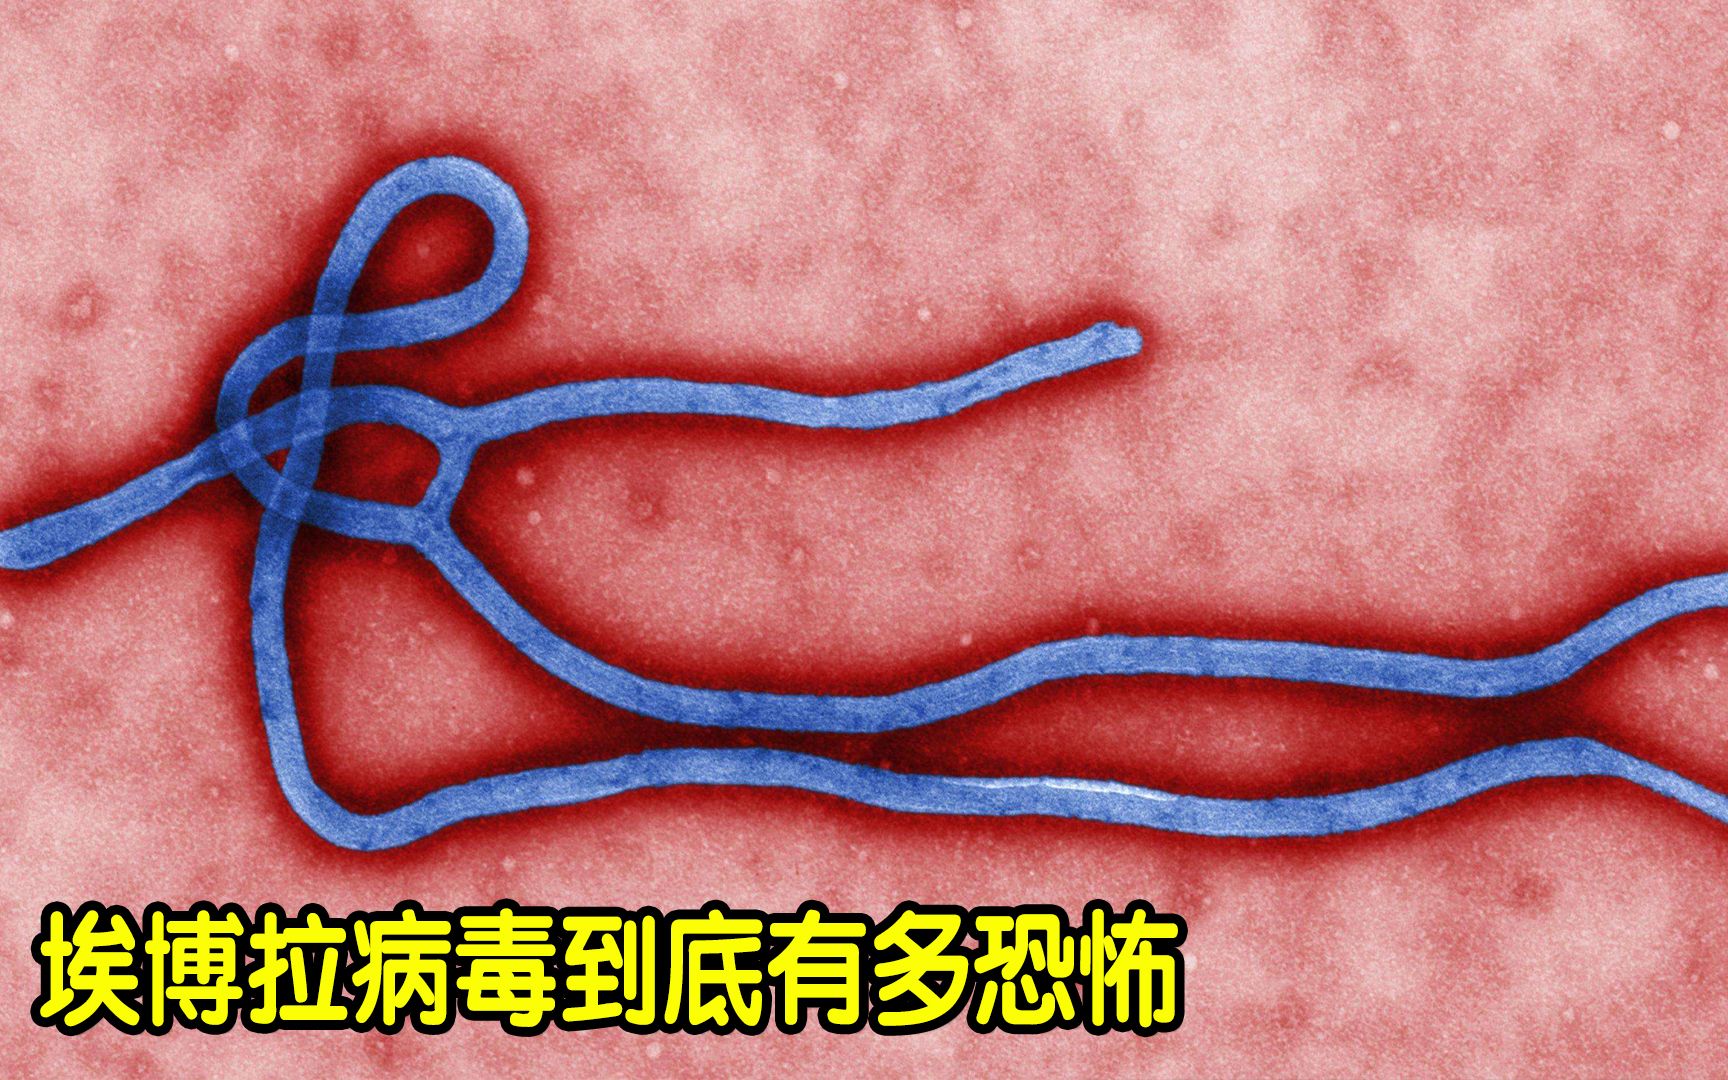 Man dies from Ebola-like Marburg virus in Uganda